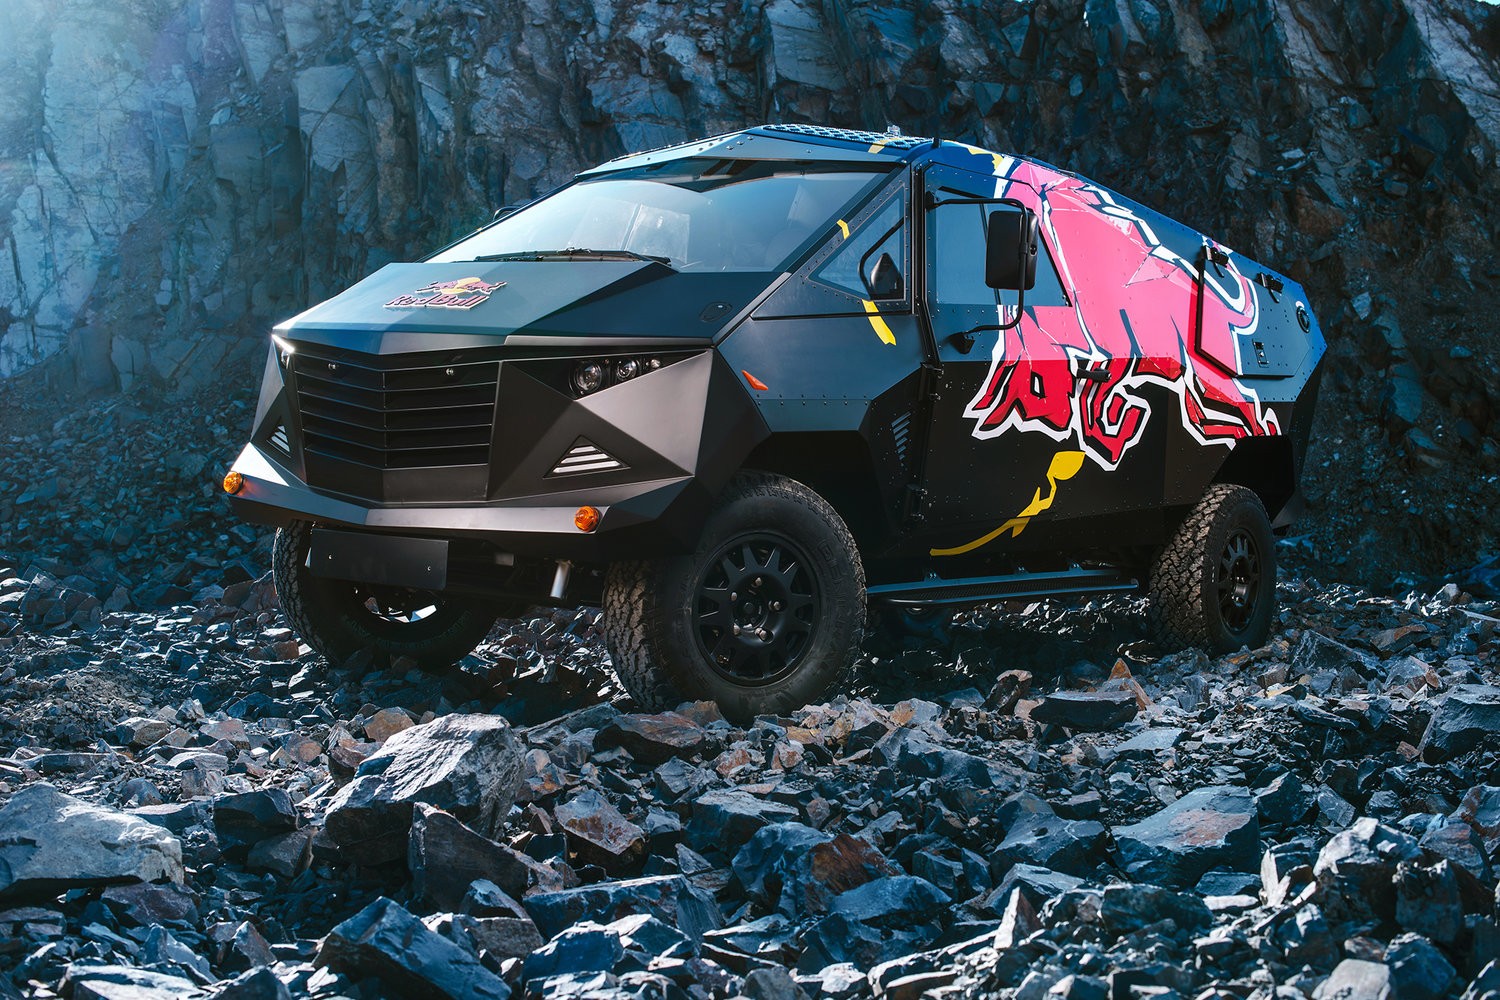 Red Bull Ungkapkan Mobil Event Baru Yang Bentuknya Sangat Ekstrim